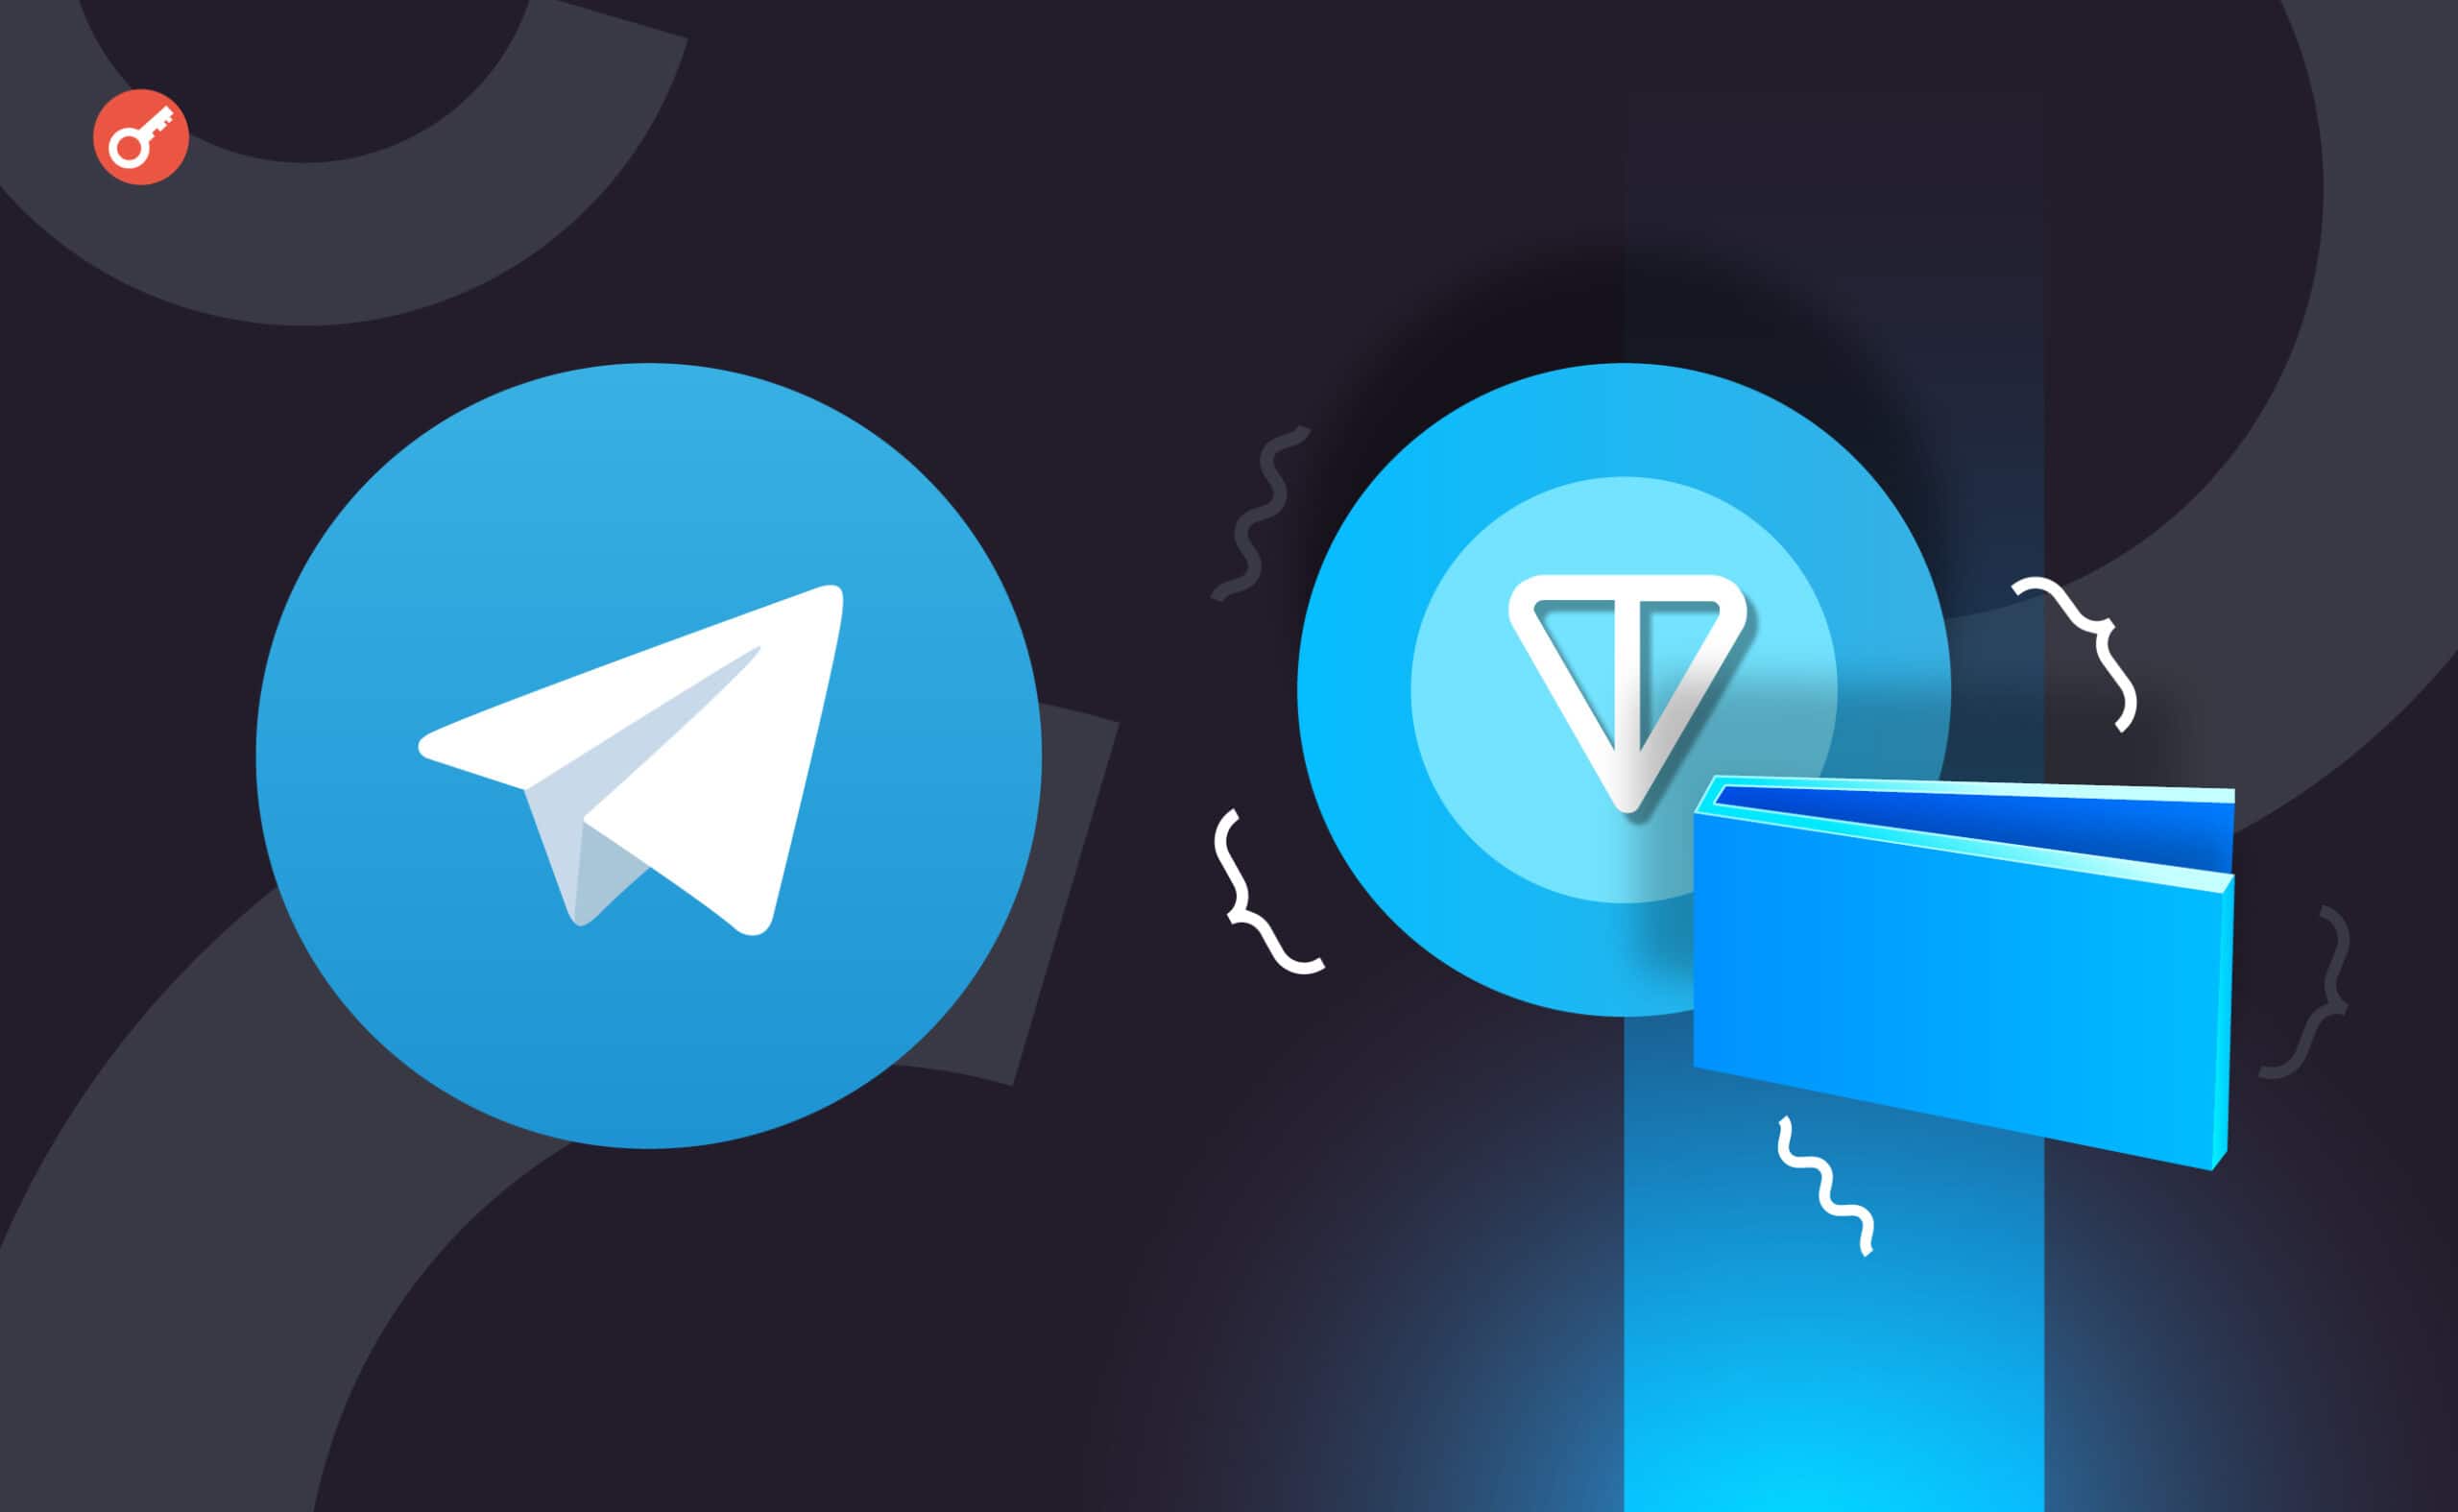 Павел Дуров подтвердил интеграцию TON Wallet в Telegram. Заглавный коллаж новости.